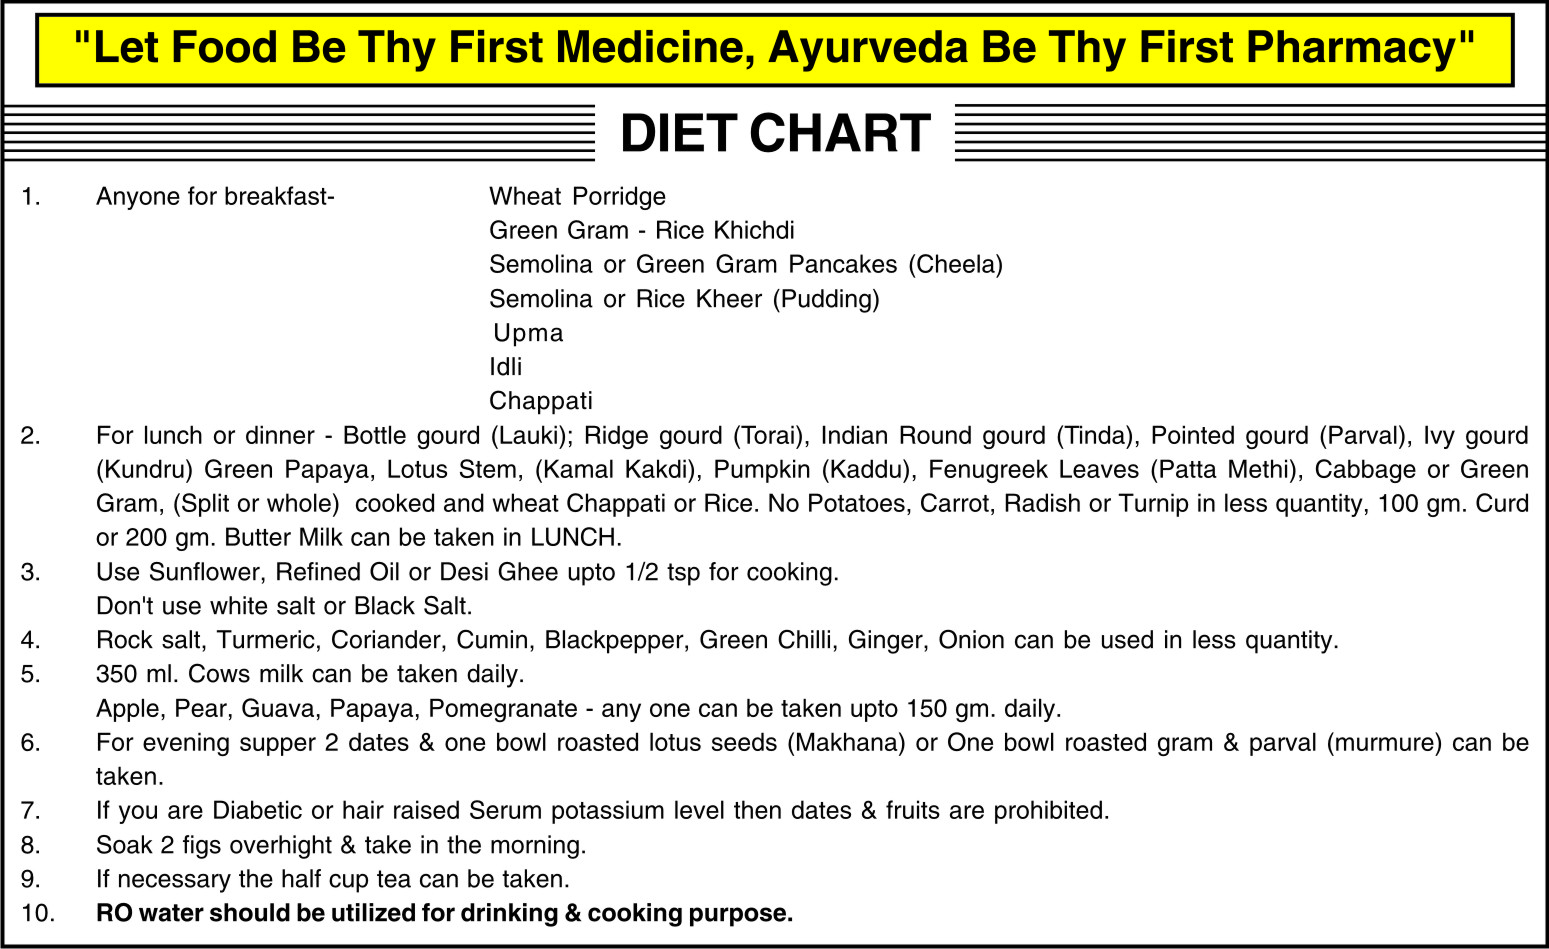 Diet chart (2)